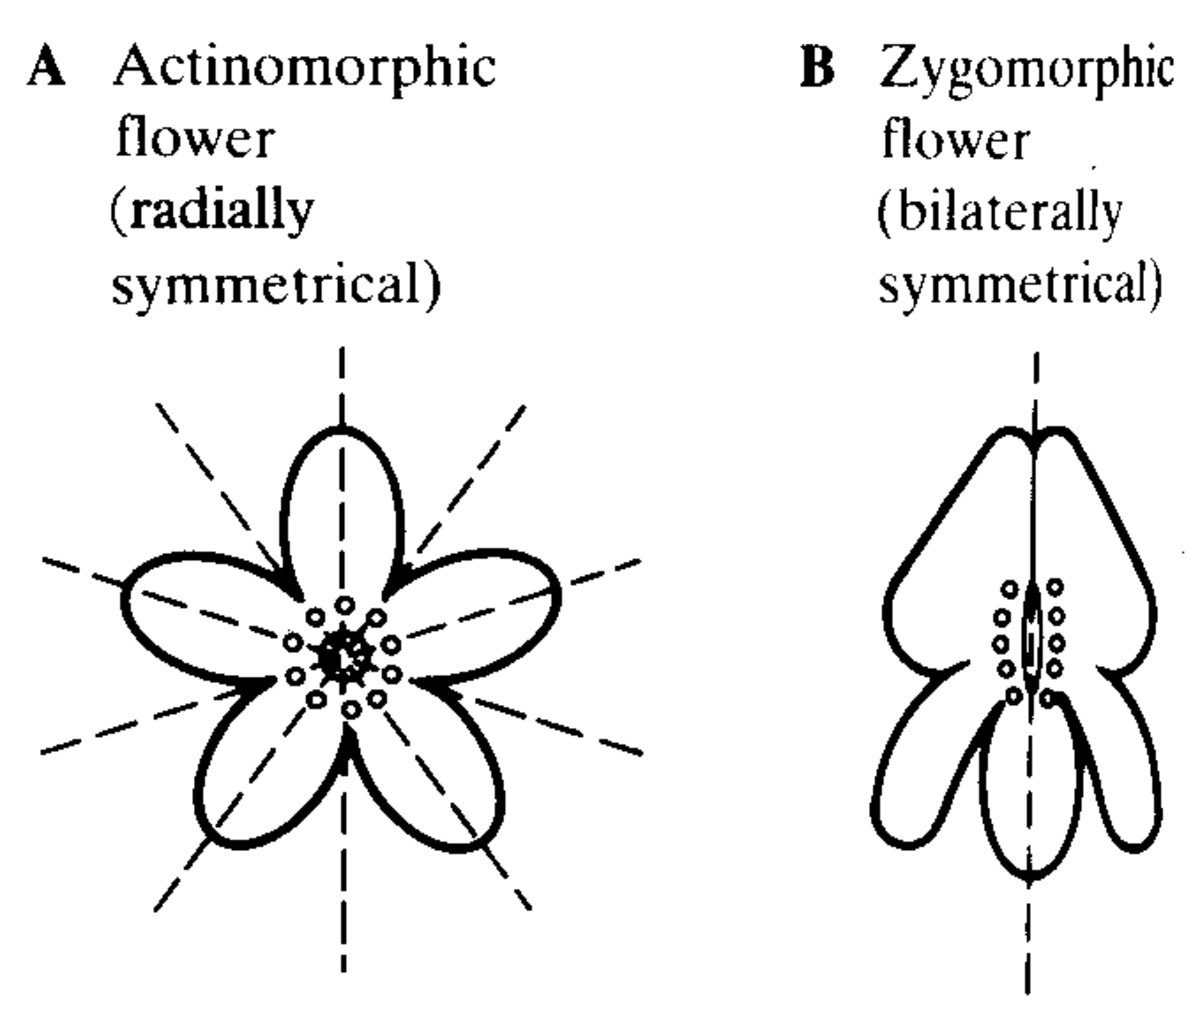 Actinomorphic (regular) and zygomorphic (irregular) flowers